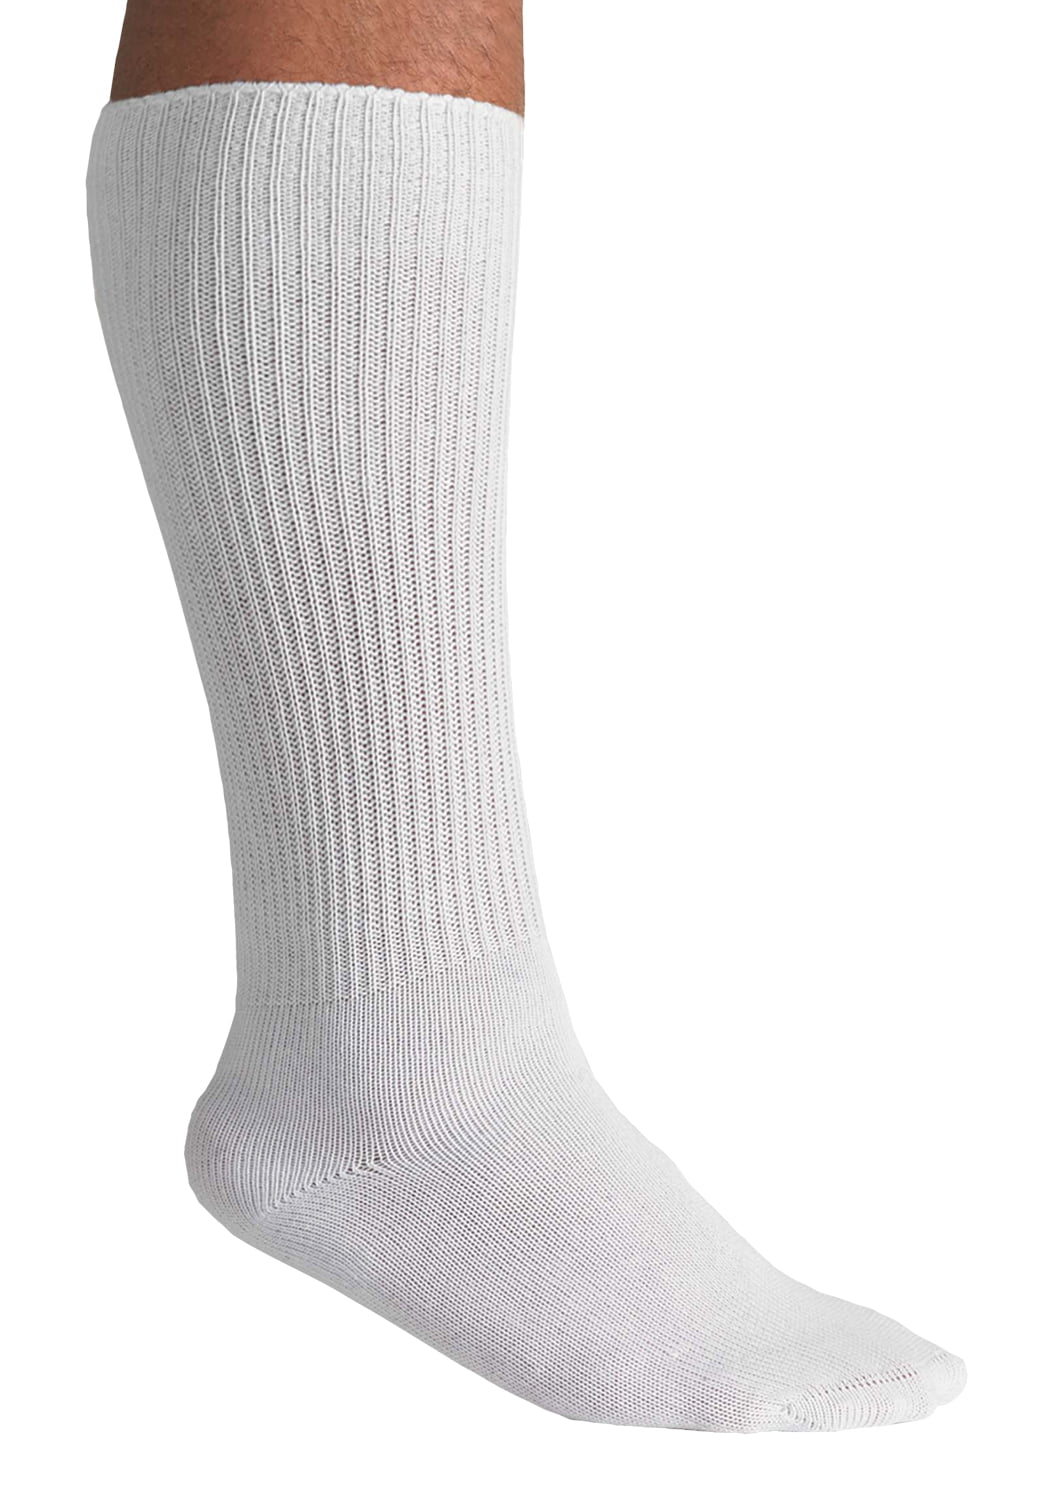 mens wide calf socks